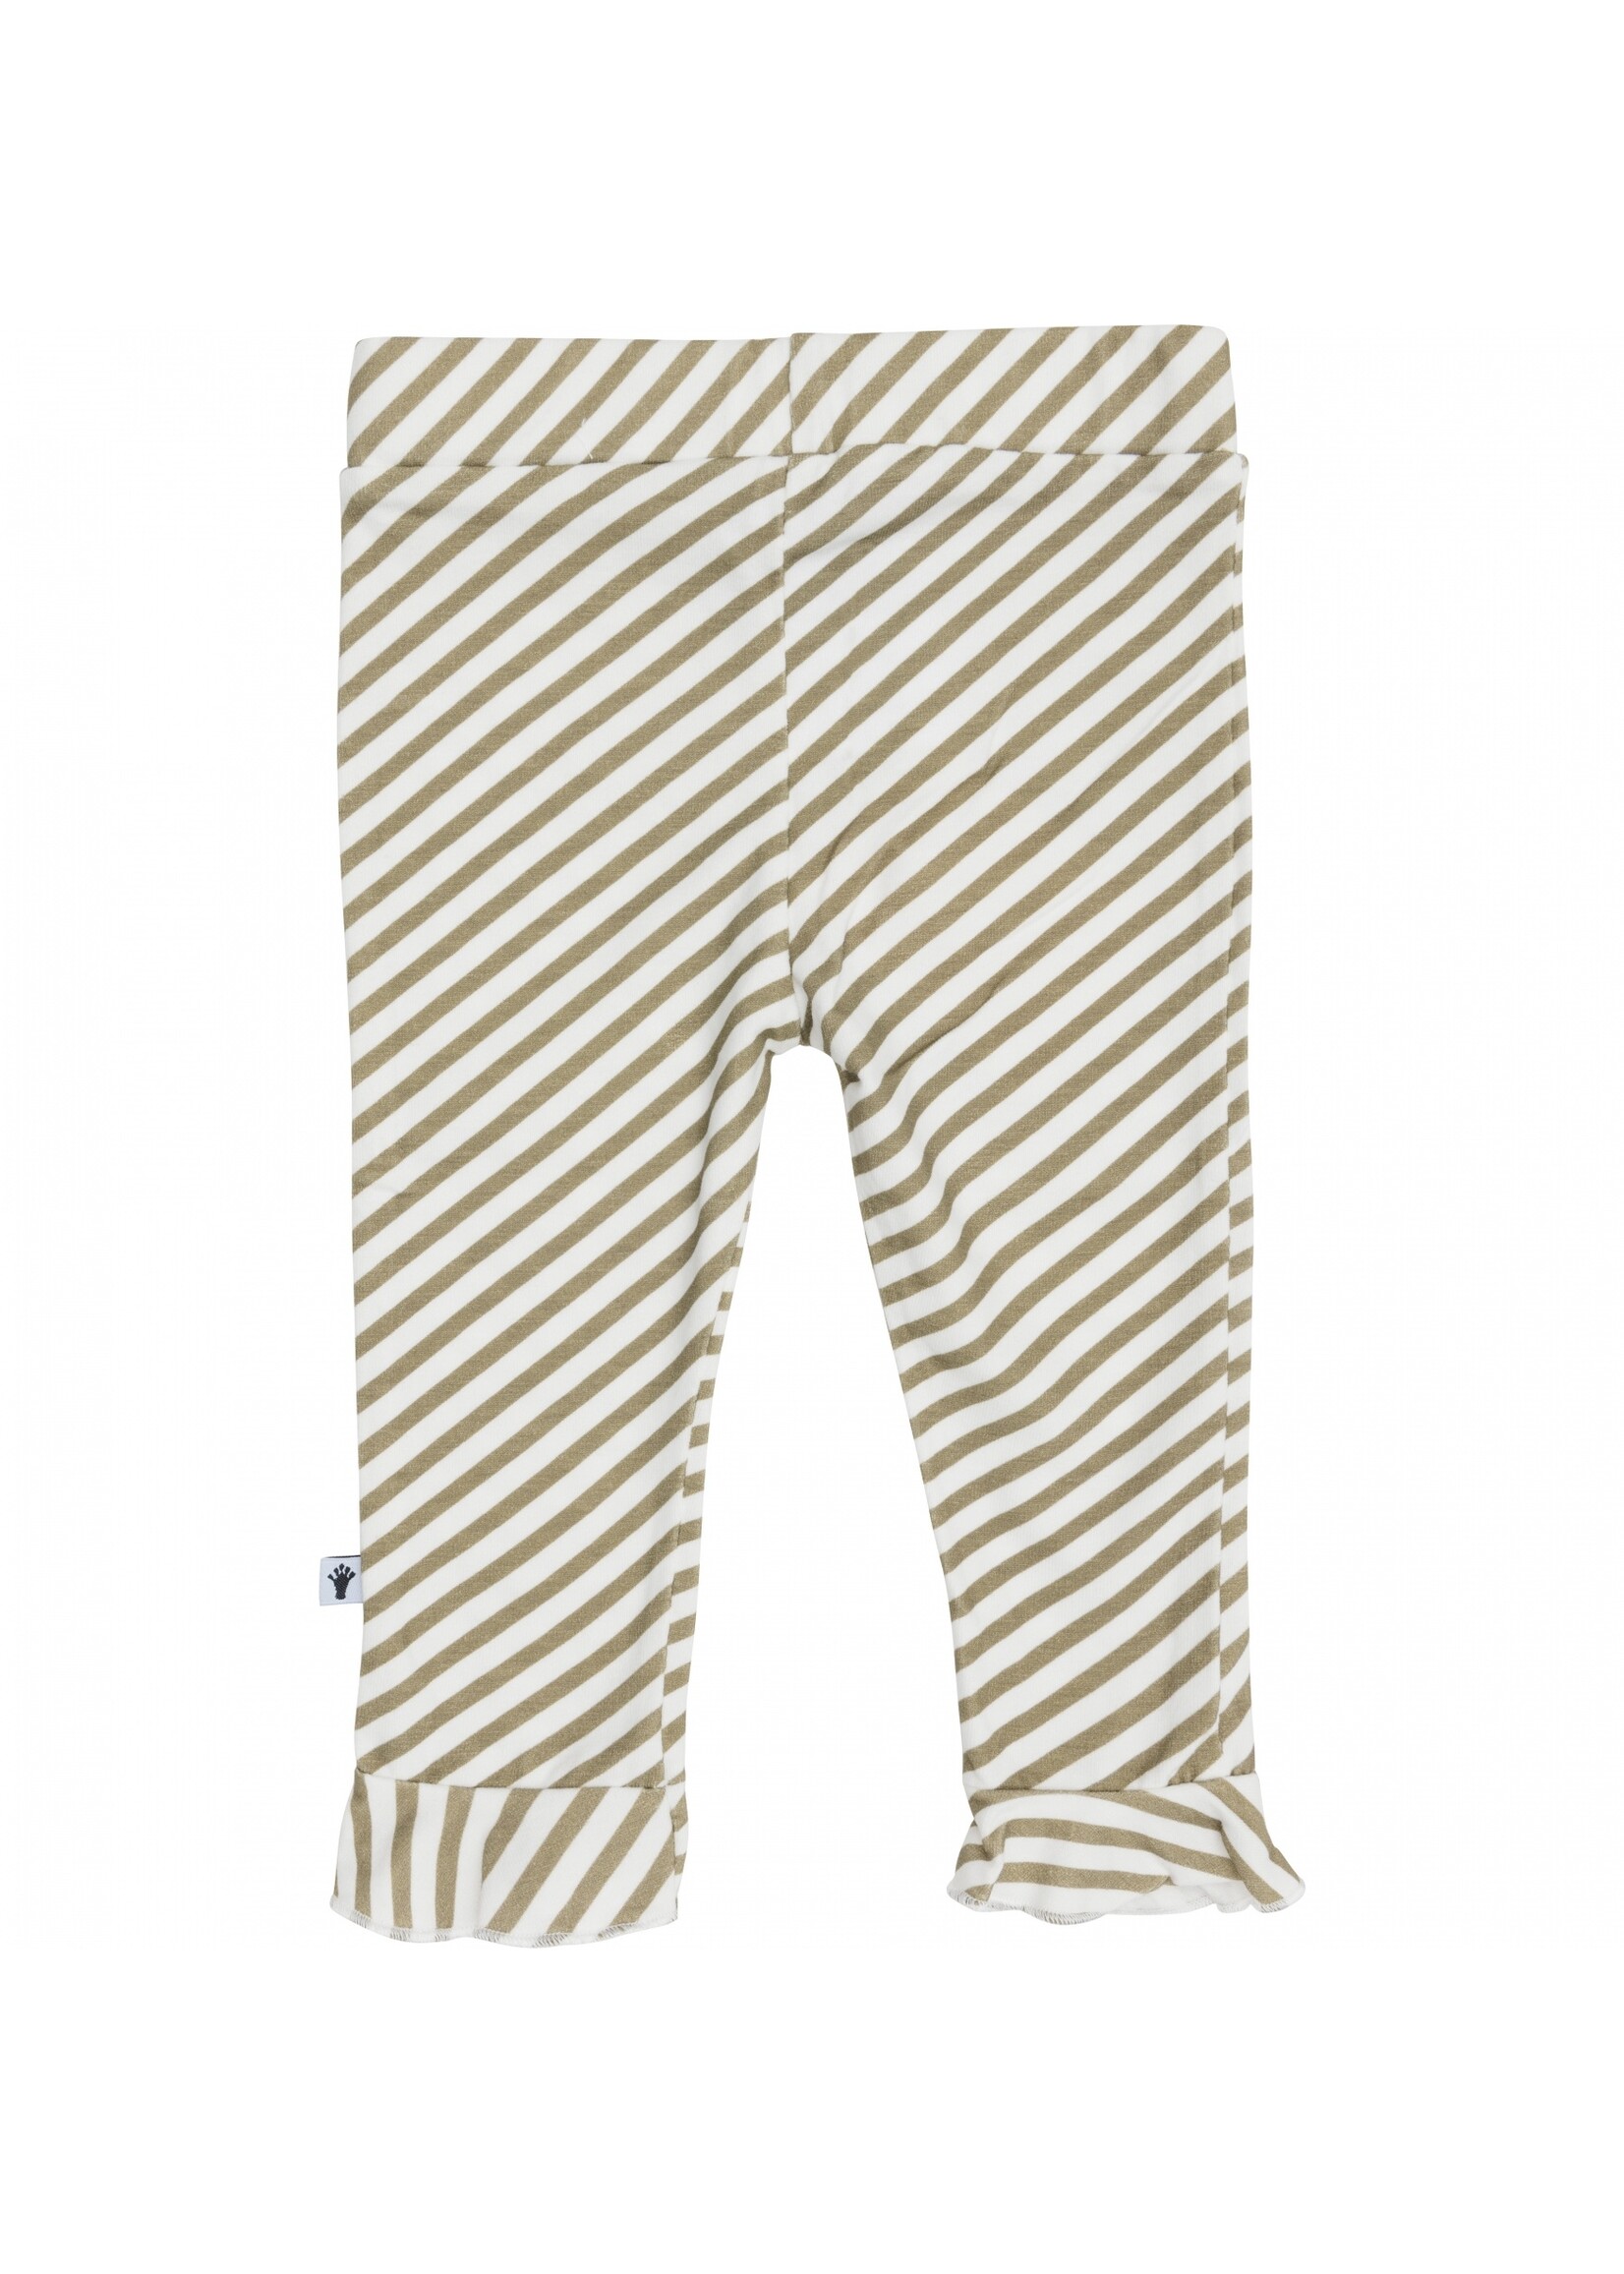 Klein Baby Trouser Ruffle Stripe Off White/Twill